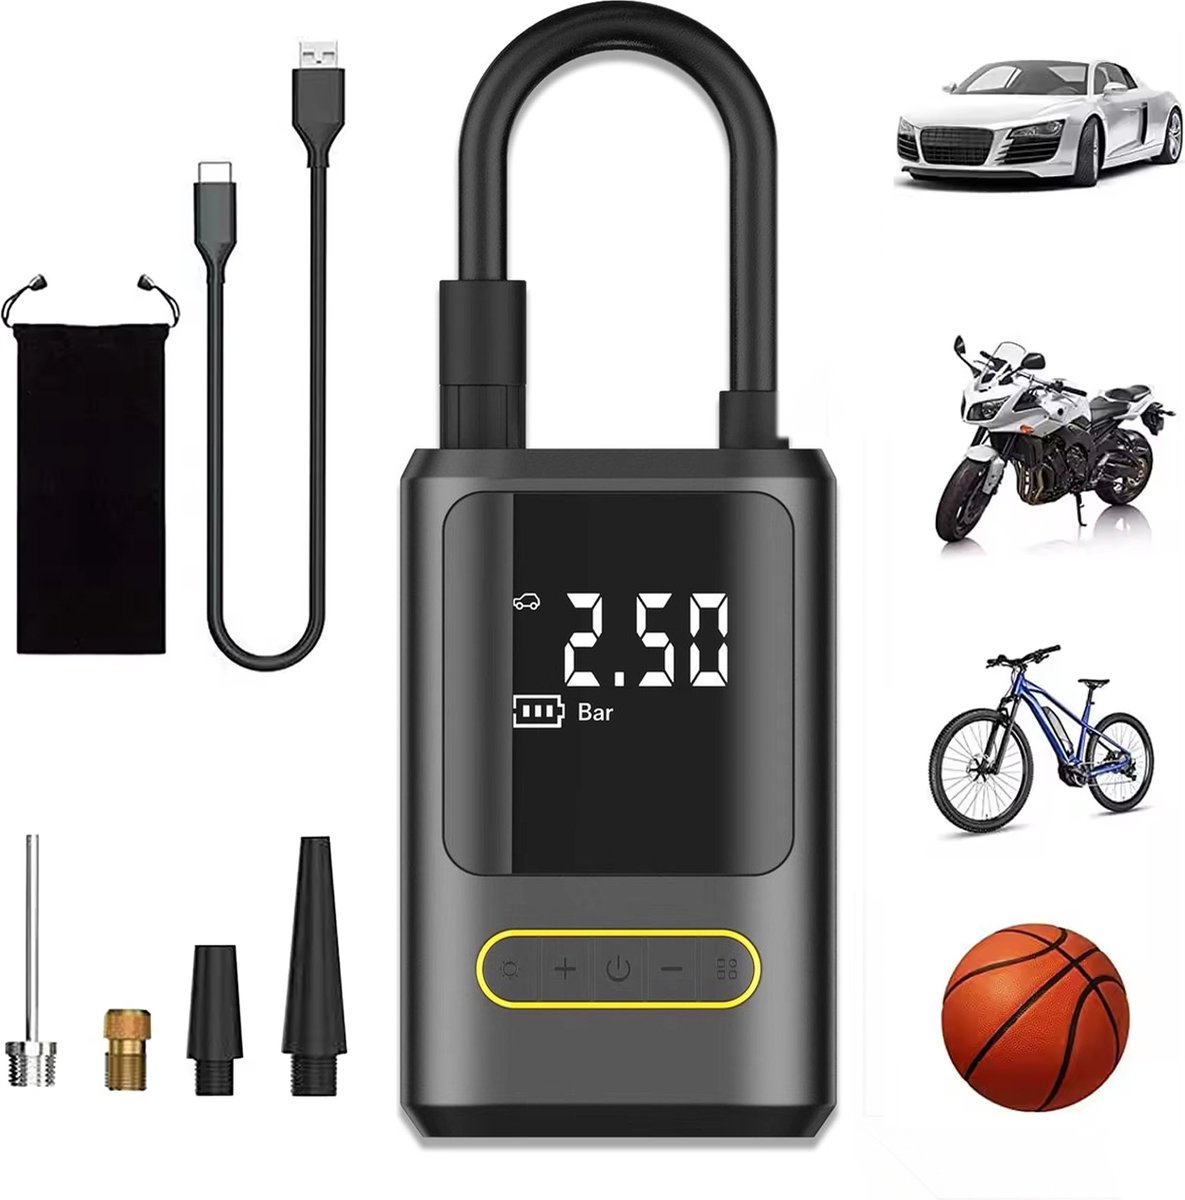 Elektrische Bandenpomp – 10,3 BAR - USB Oplaadbaar - Fietspomp - Ballenpomp - Autobanden Pomp - Luchtpomp - Luchtcompressor - Noodlamp